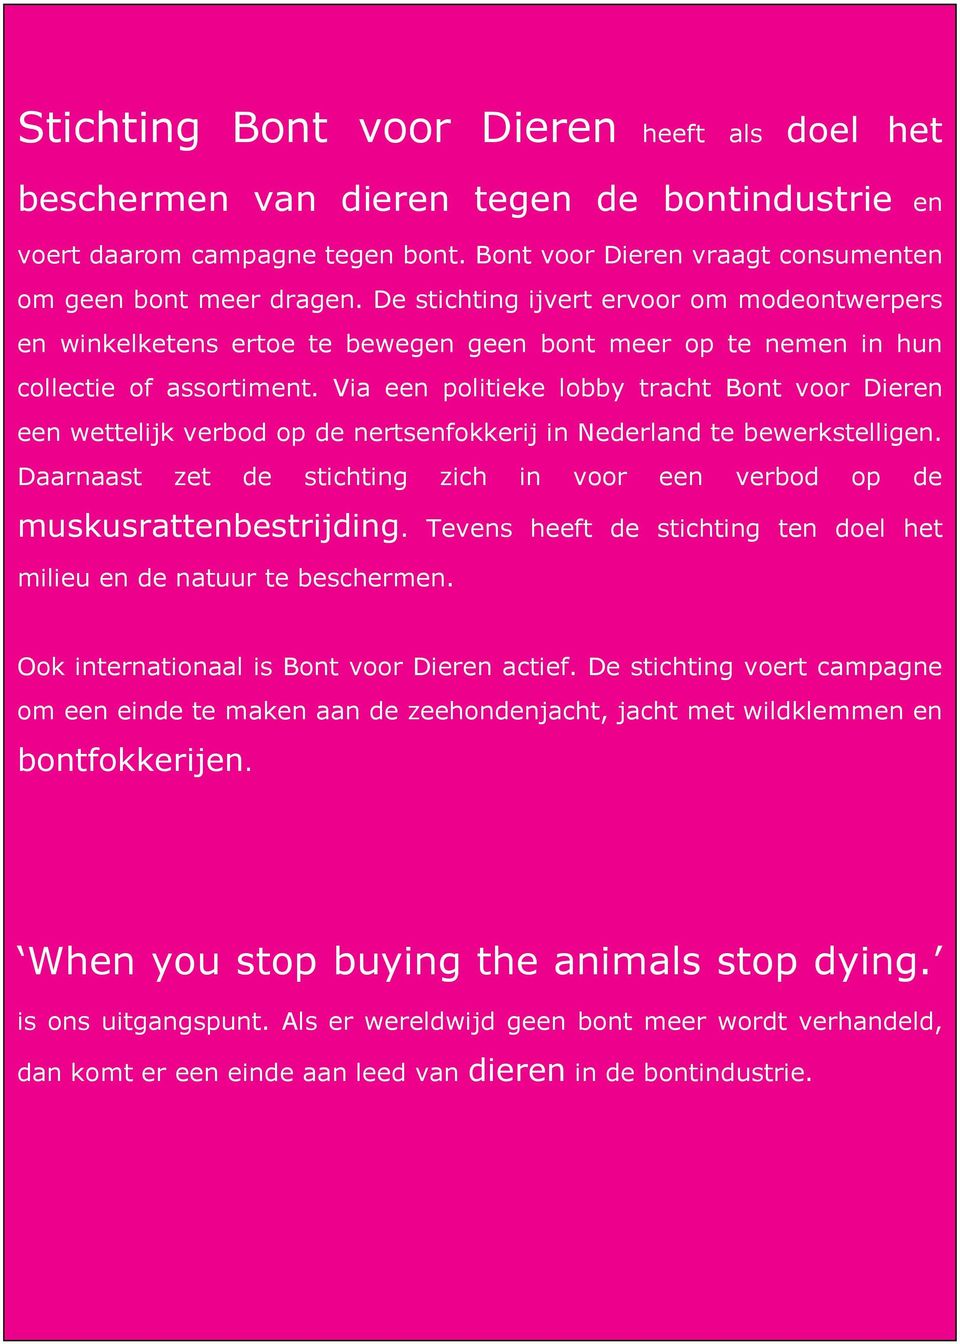 Via een politieke lobby tracht Bont voor Dieren een wettelijk verbod op de nertsenfokkerij in Nederland te bewerkstelligen.